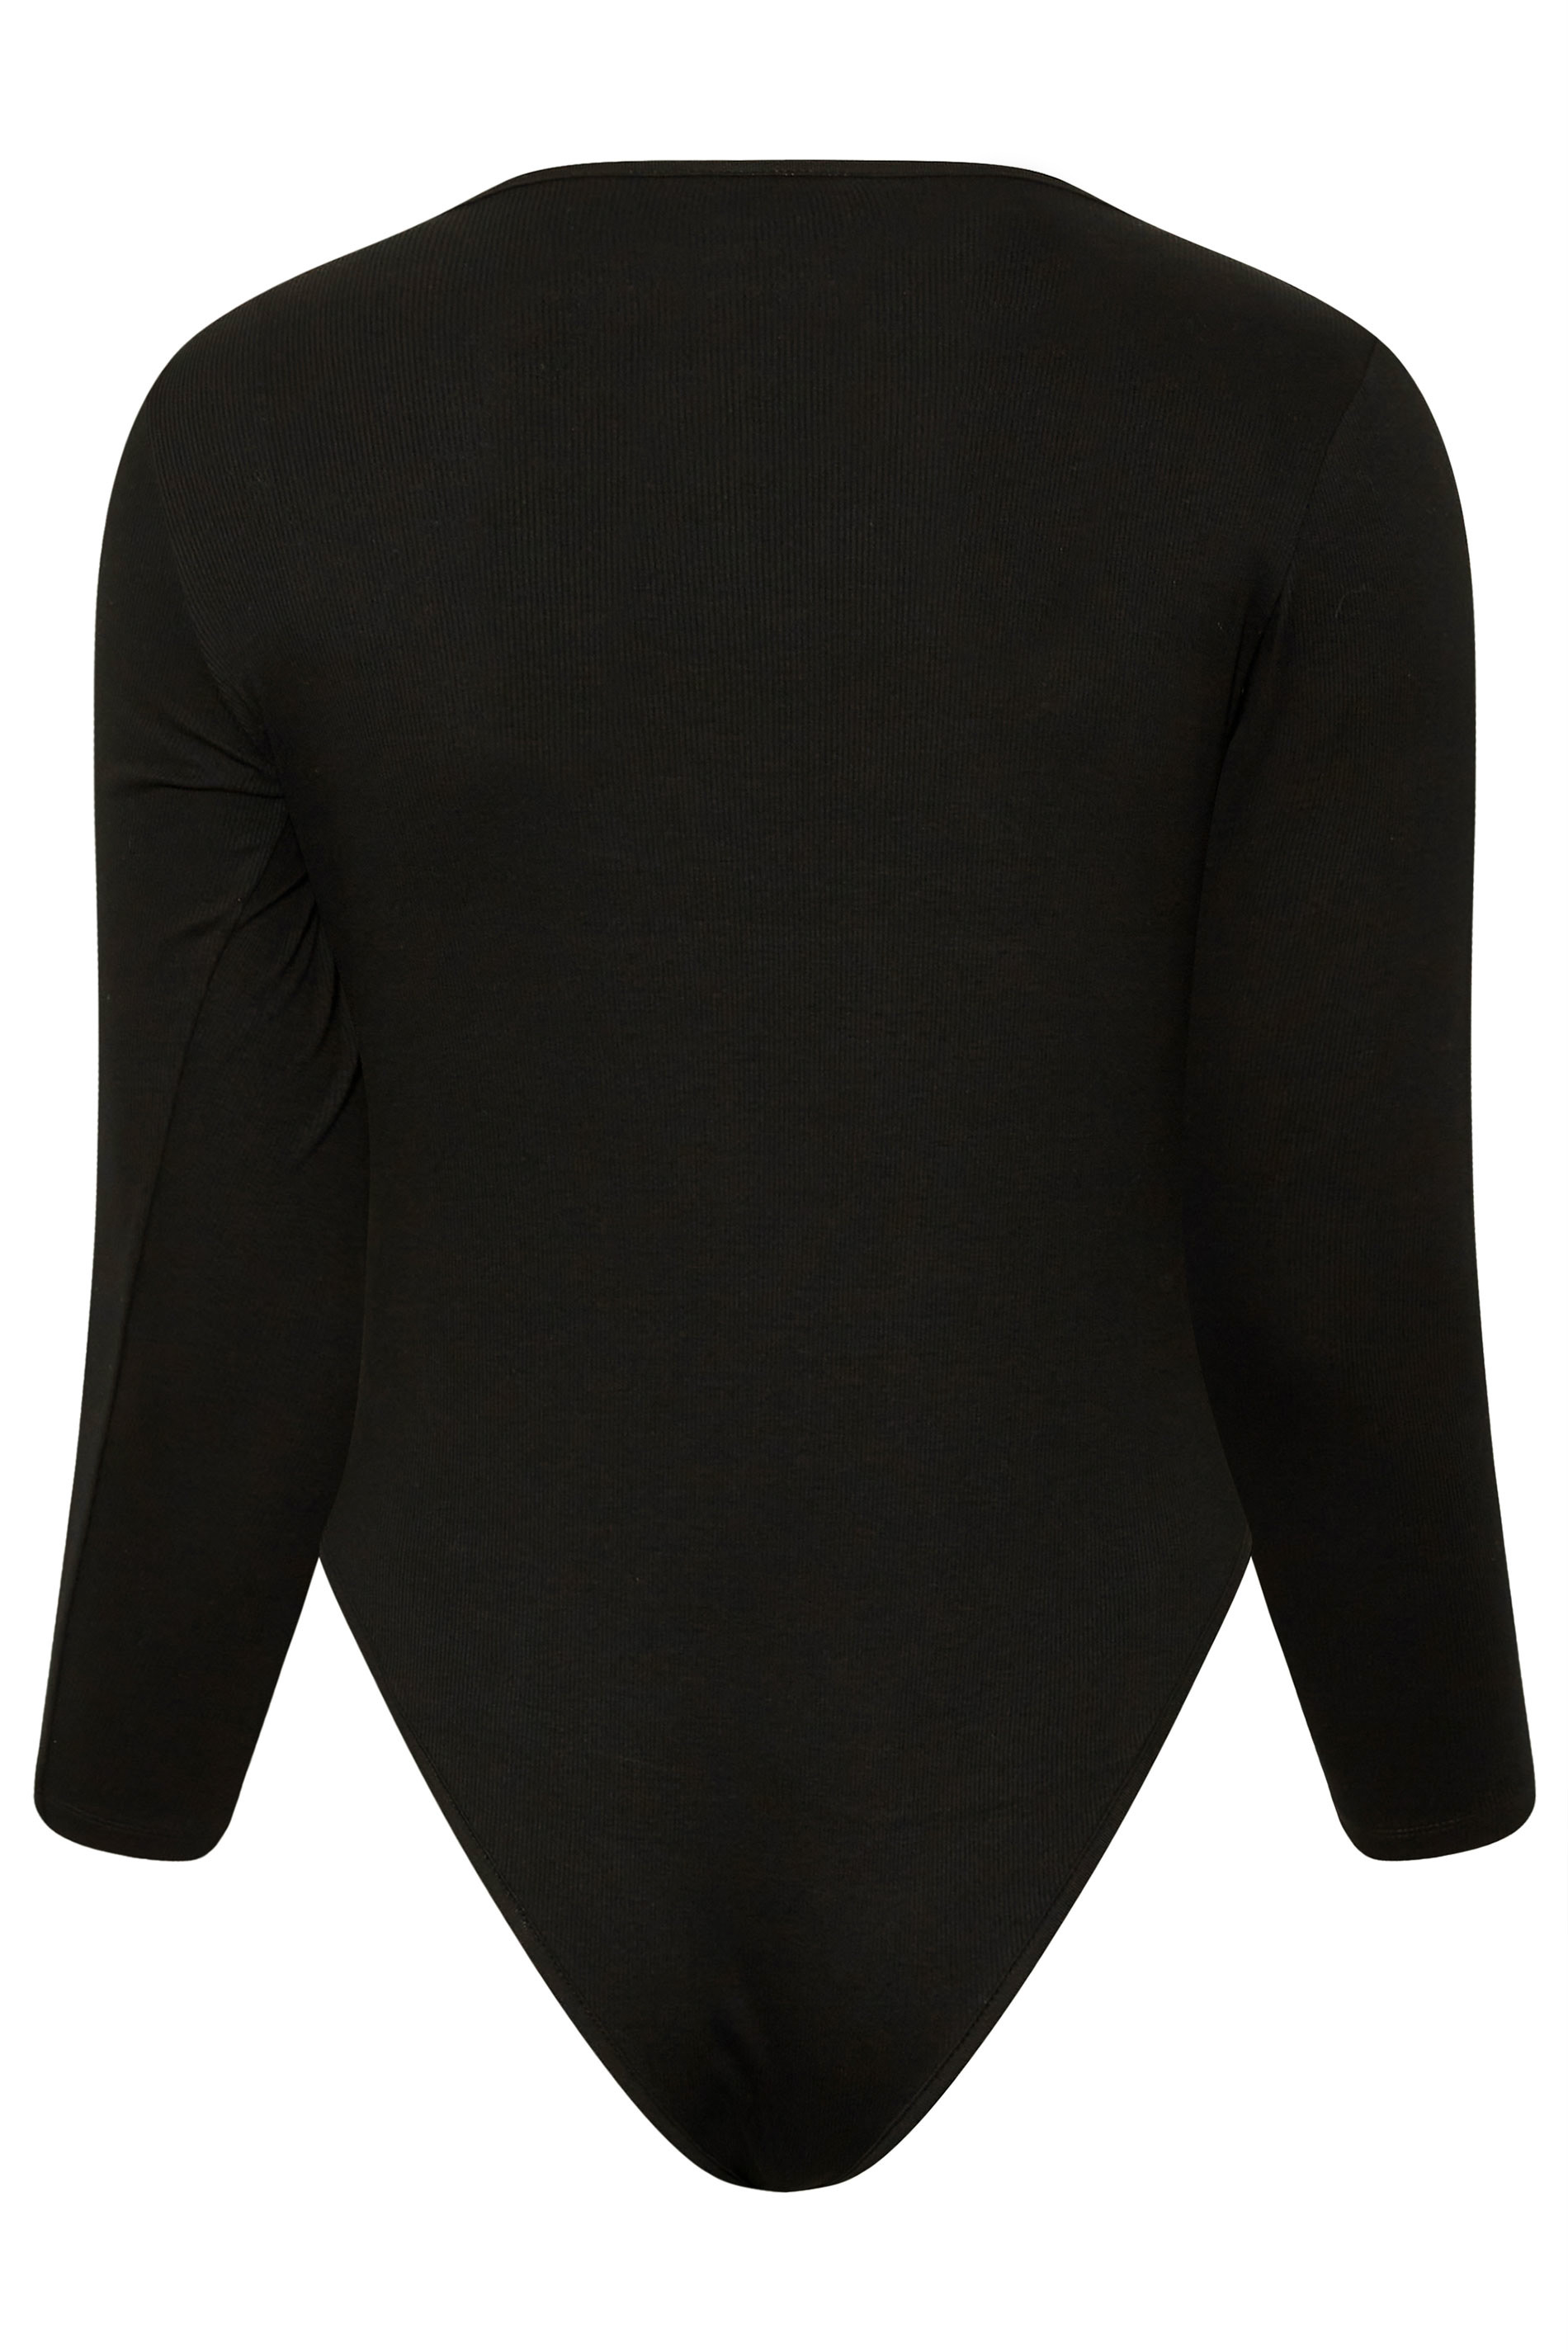 Plus Size Black Long Sleeve Ribbed Bodysuit